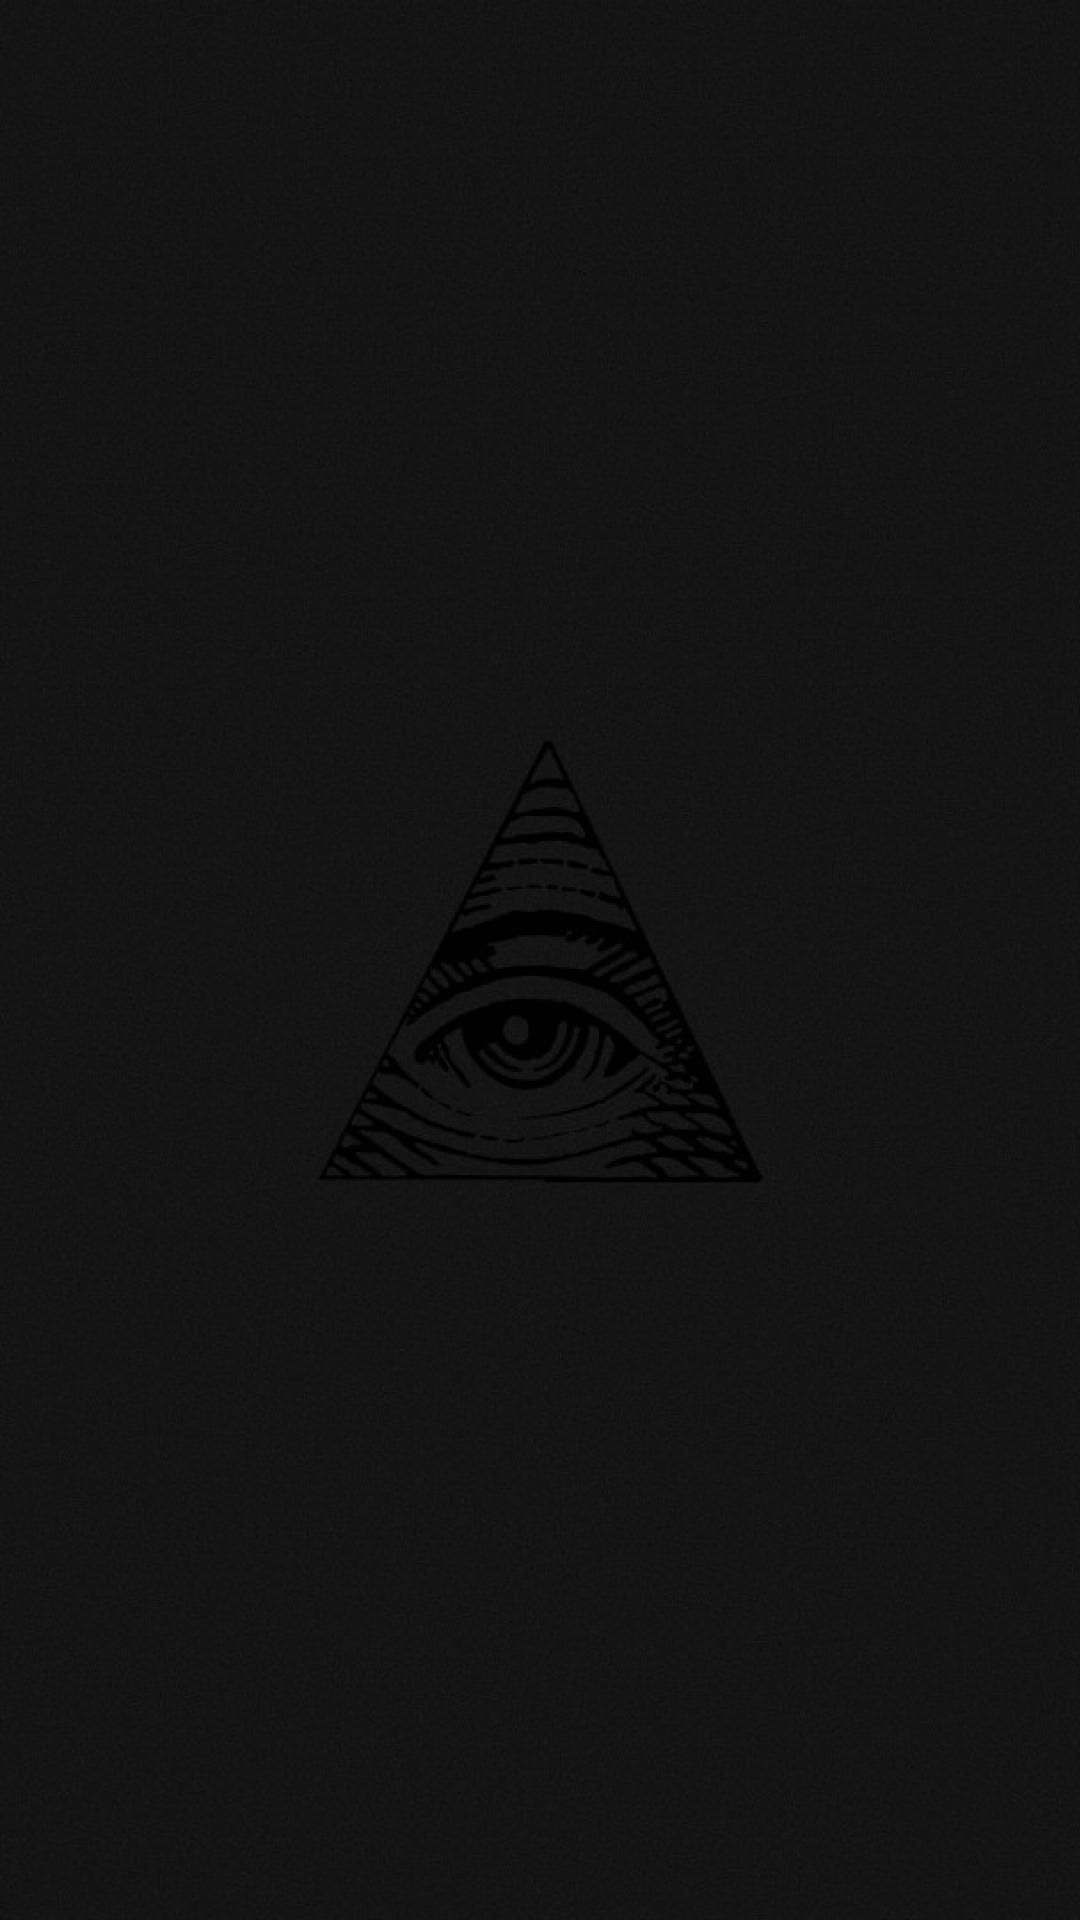 بک گراند تاریک چشم داخل مثلث برای آیفون با کیفیت hd